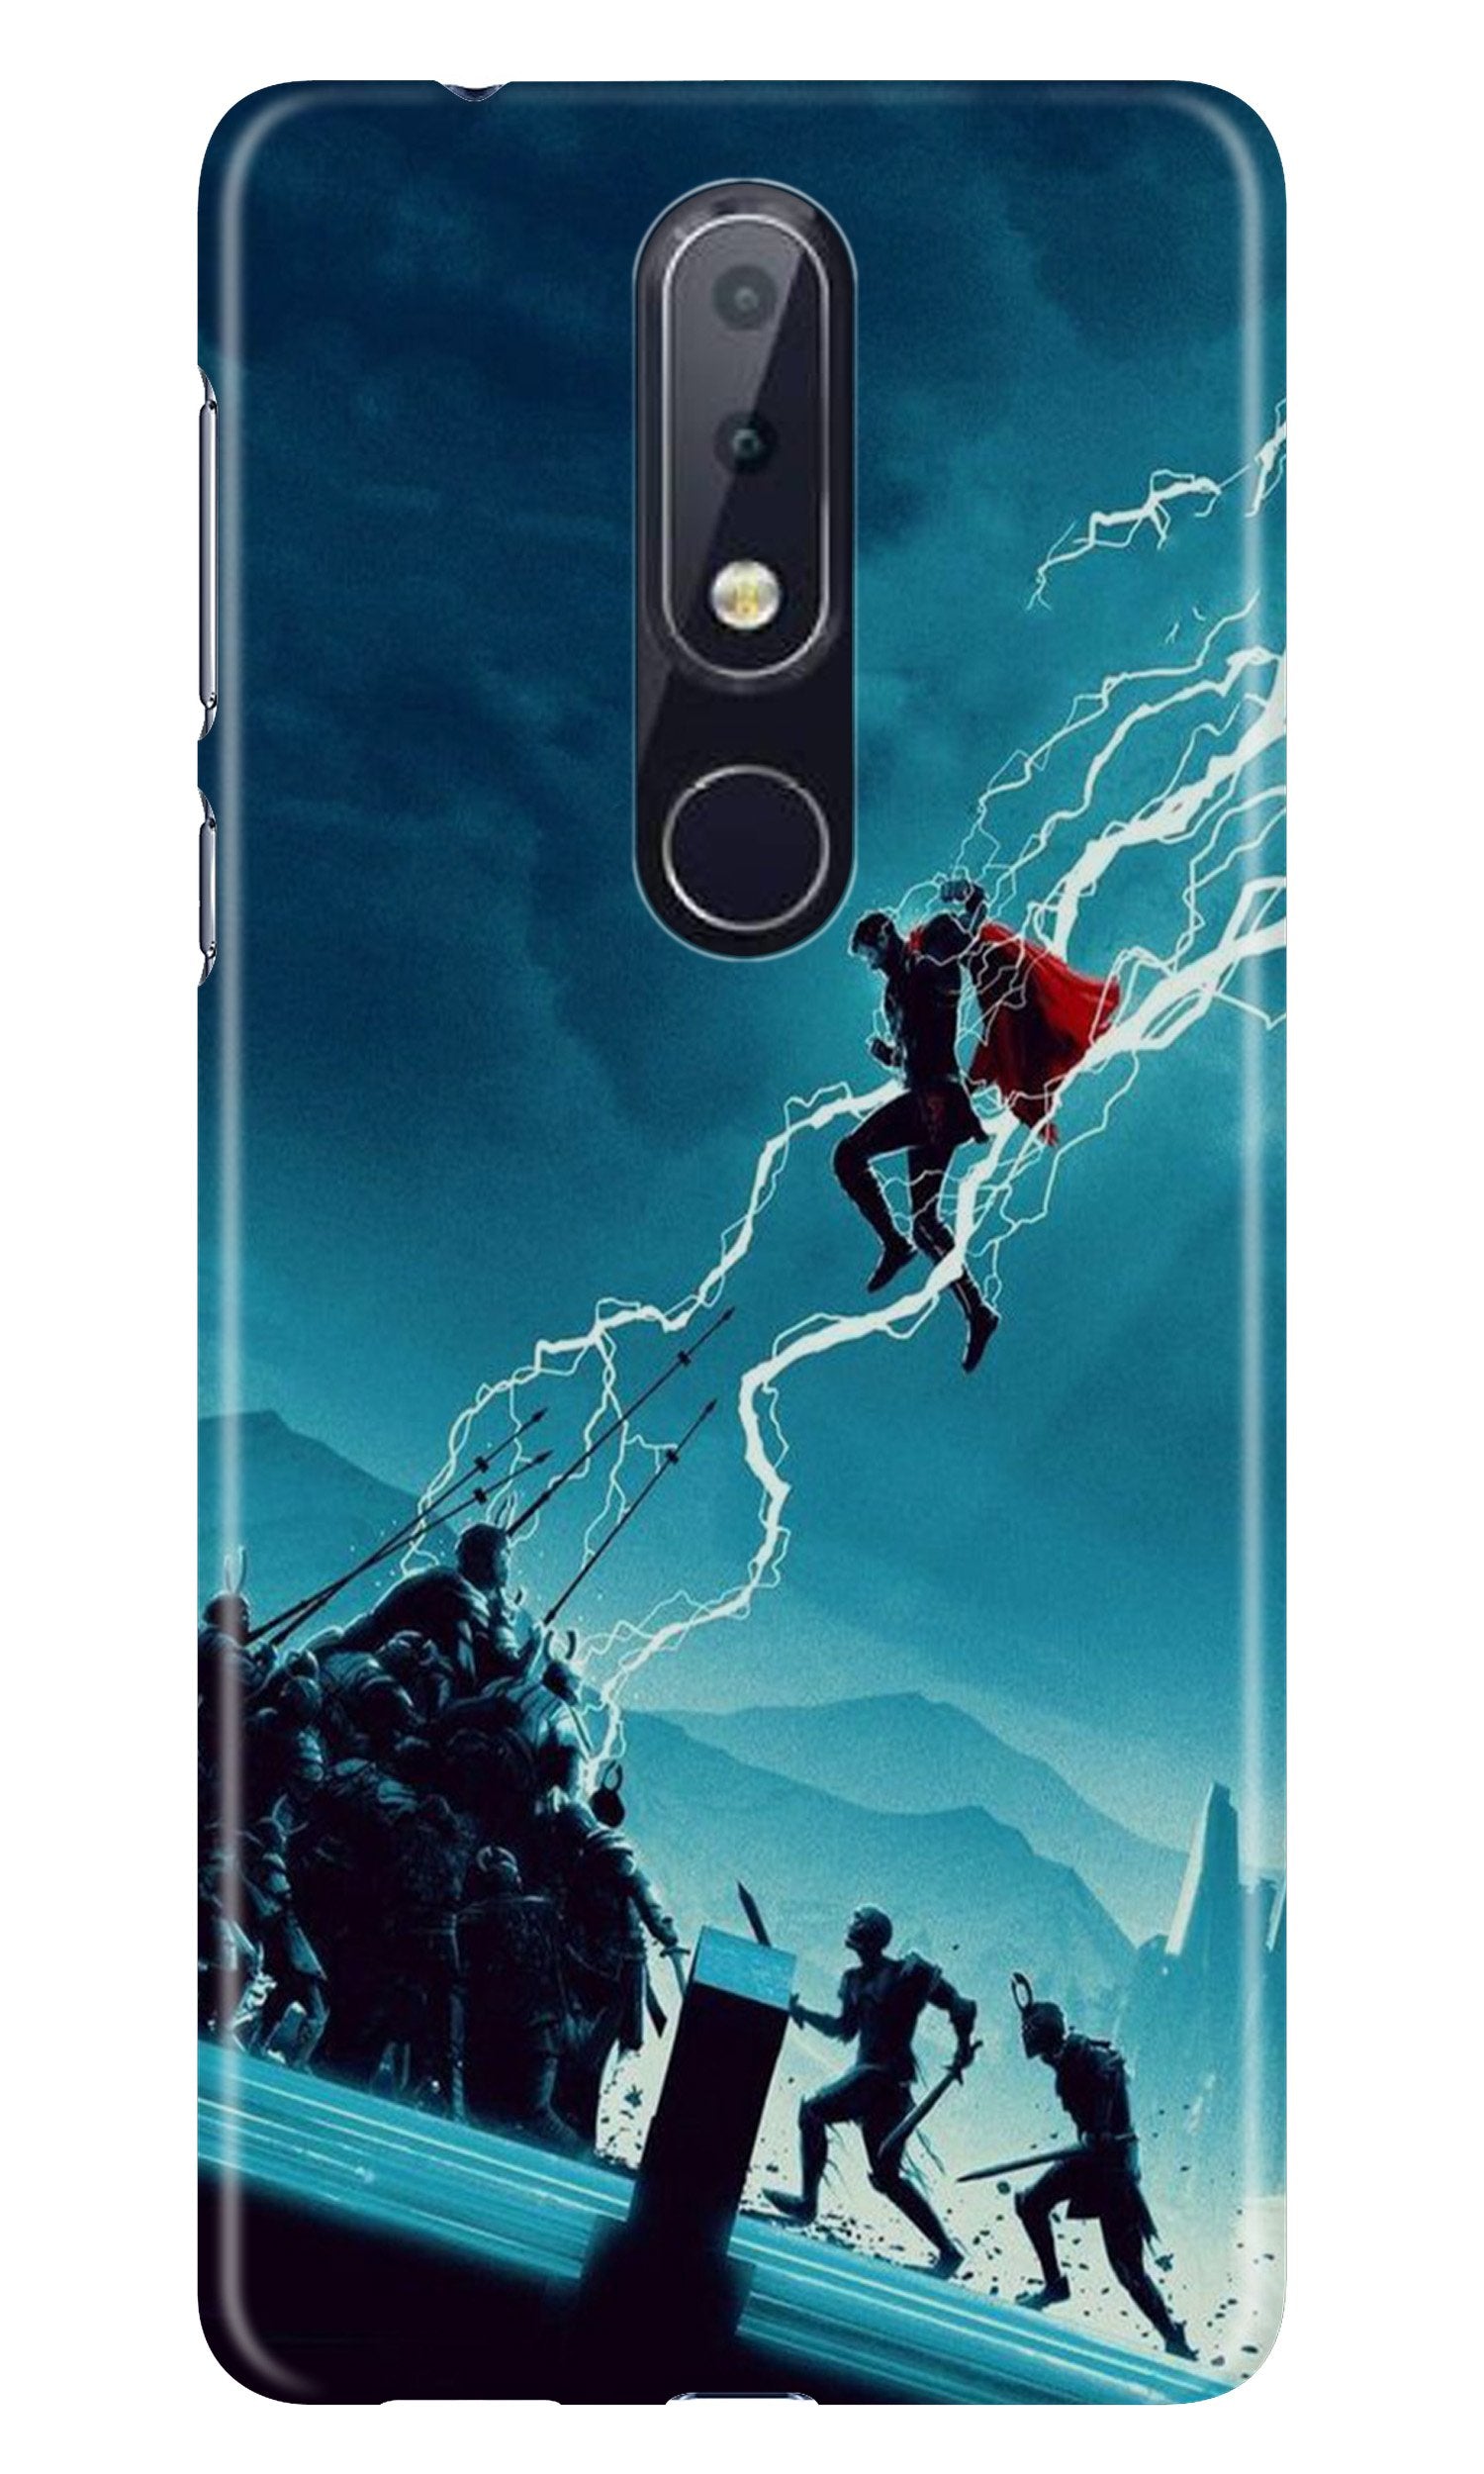 Thor Avengers Case for Nokia 4.2 (Design No. 243)